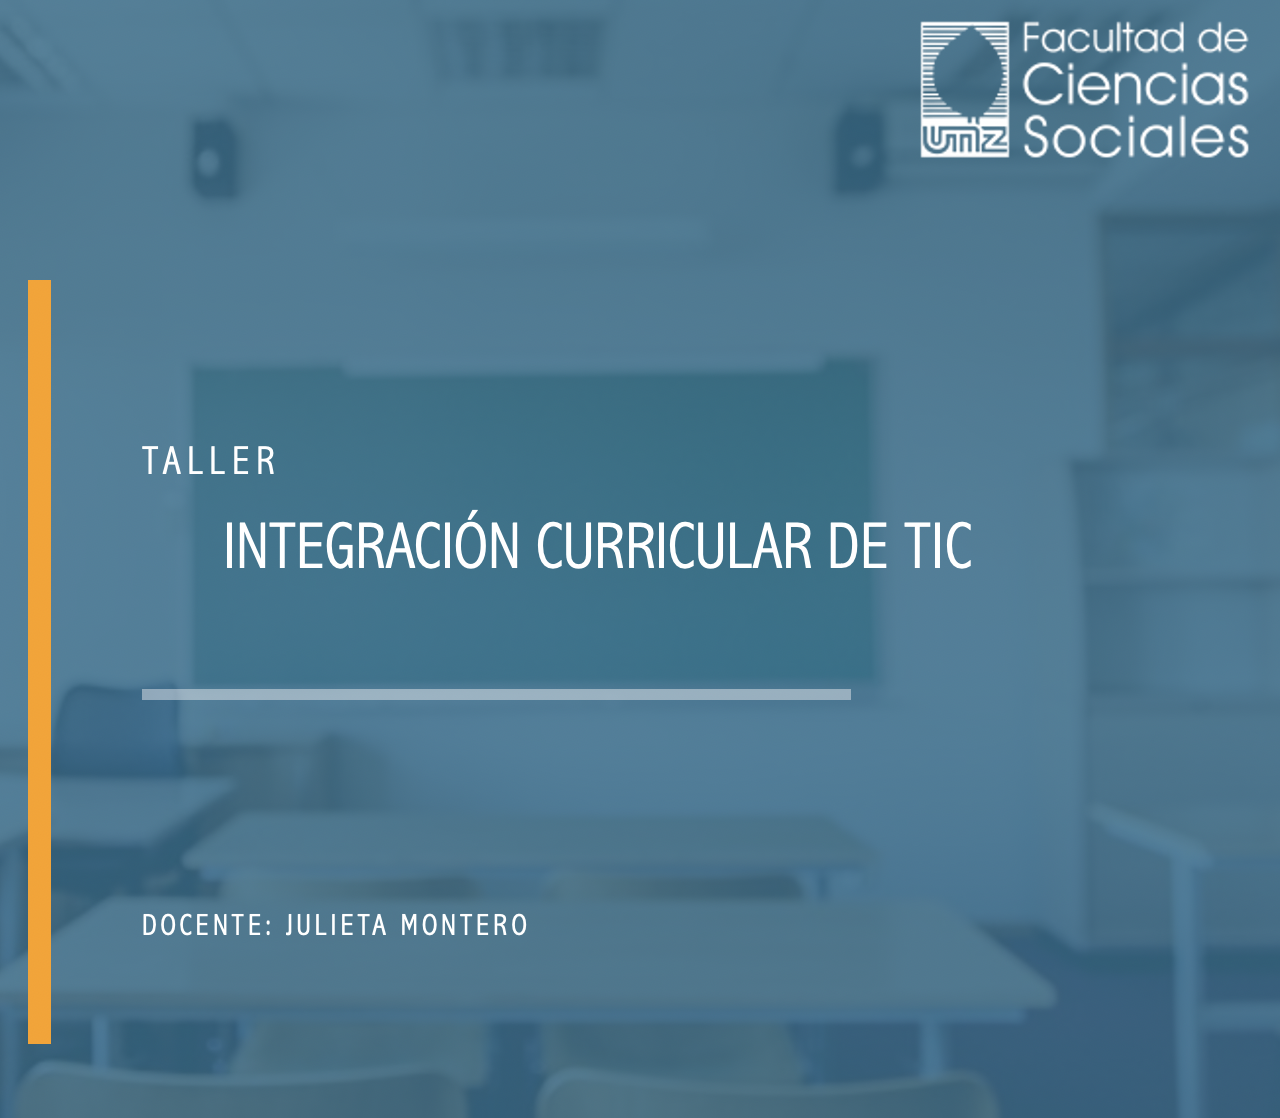 Taller de Integración Curricular de TIC